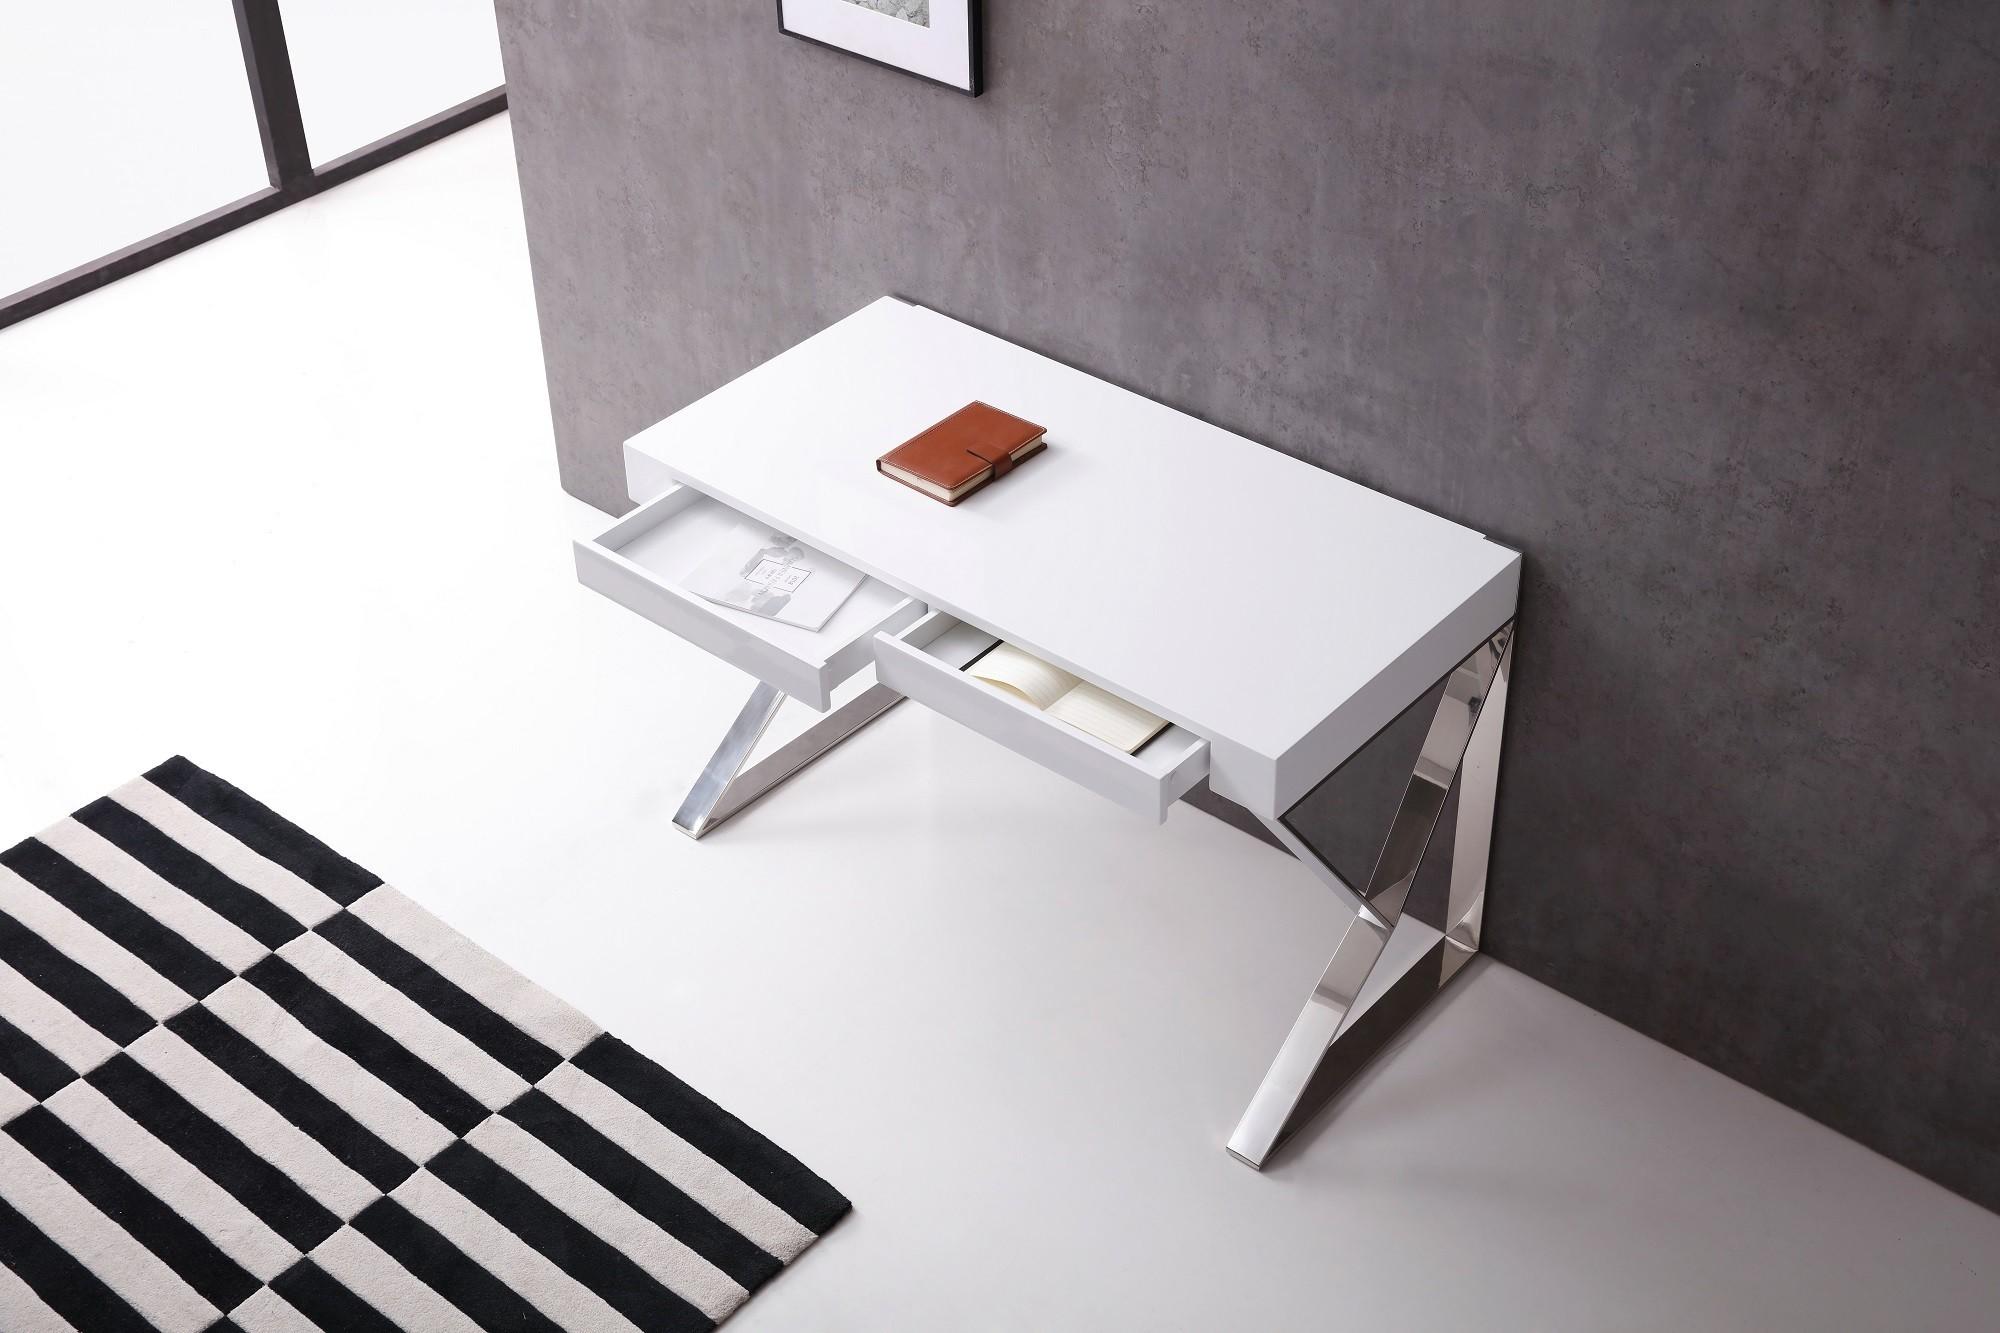 

    
17112-WH Home Office Writing Desk White & Chrome Noho J&M Contemporary
